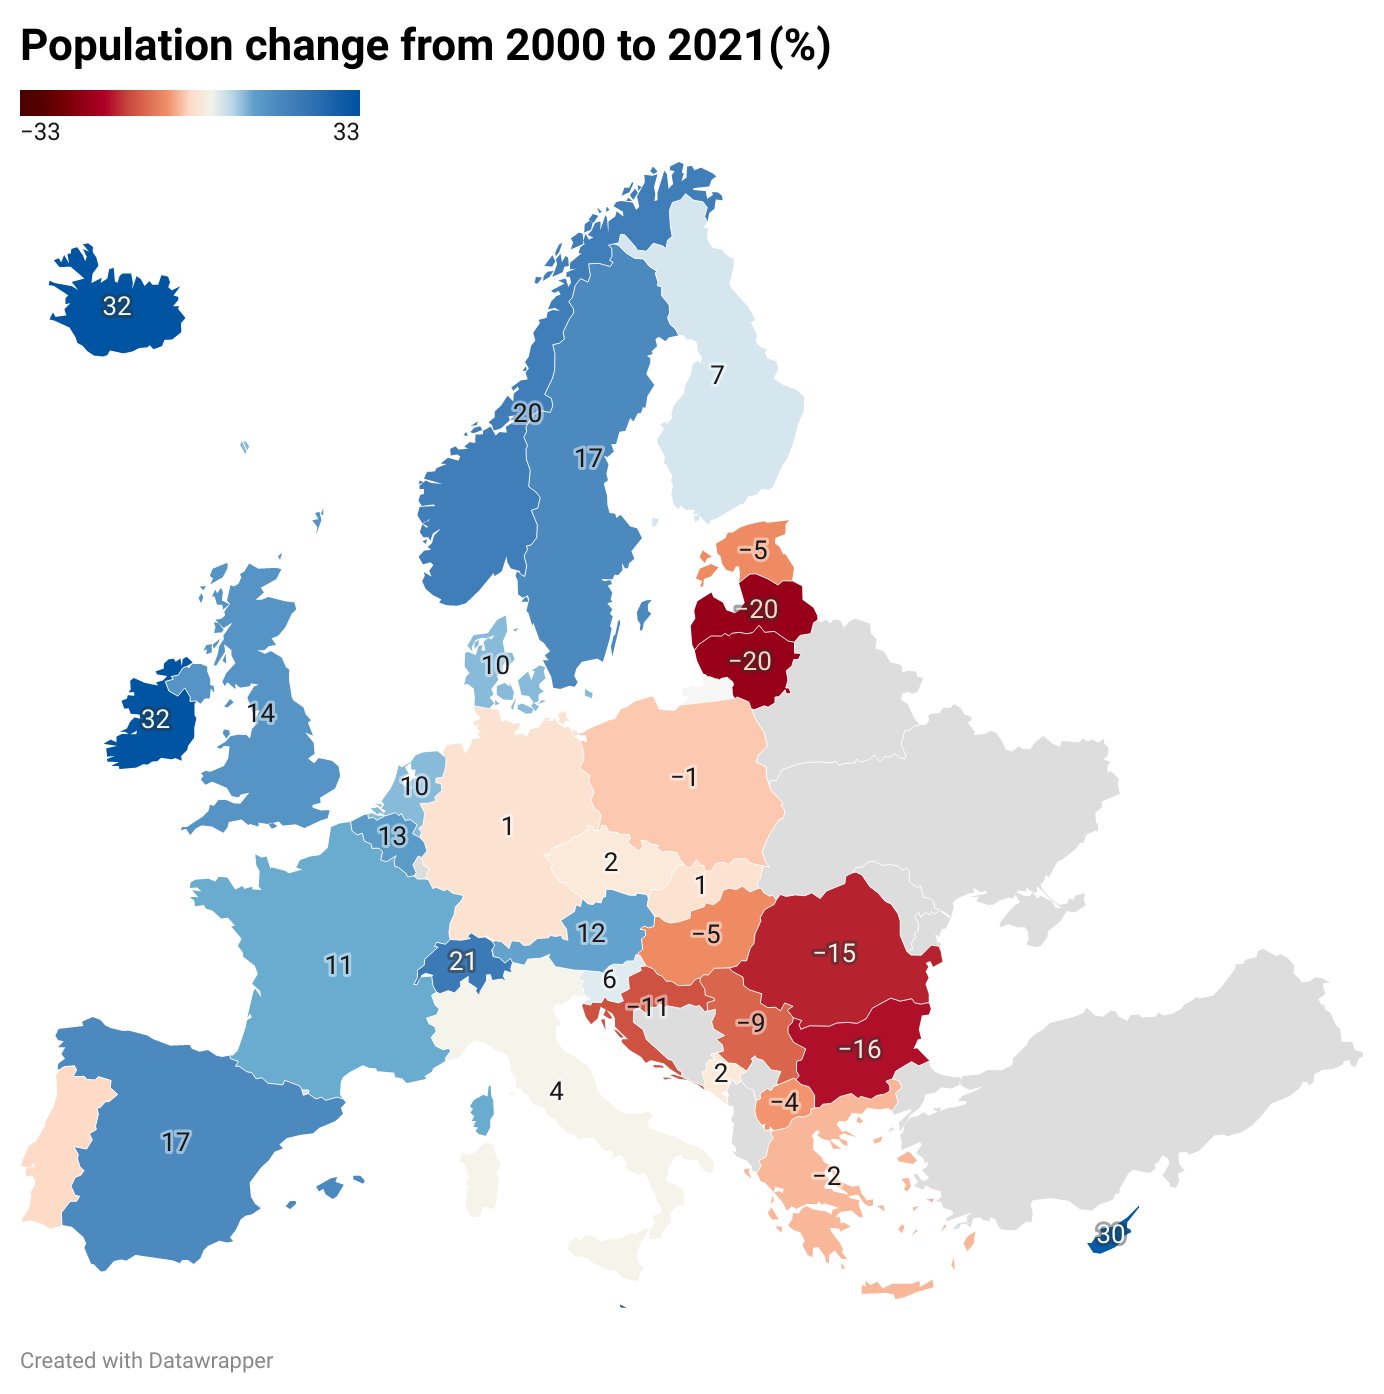 Zmiana liczby ludności w latach 2000-2021, największy wzrost w Irlandii